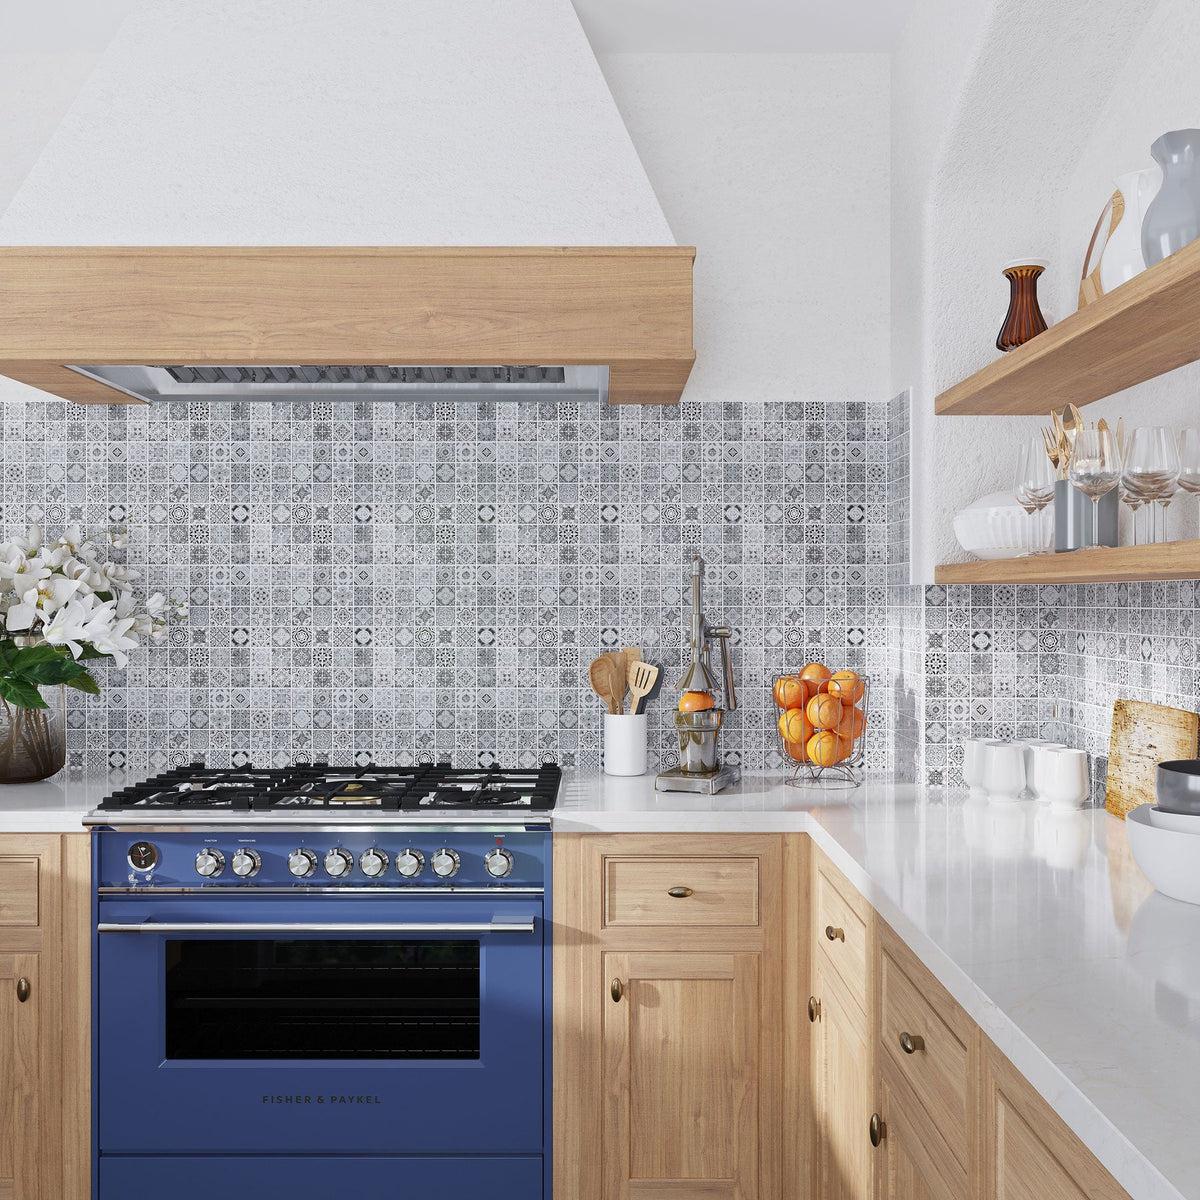 Spanish patterned tile kitchen backsplash